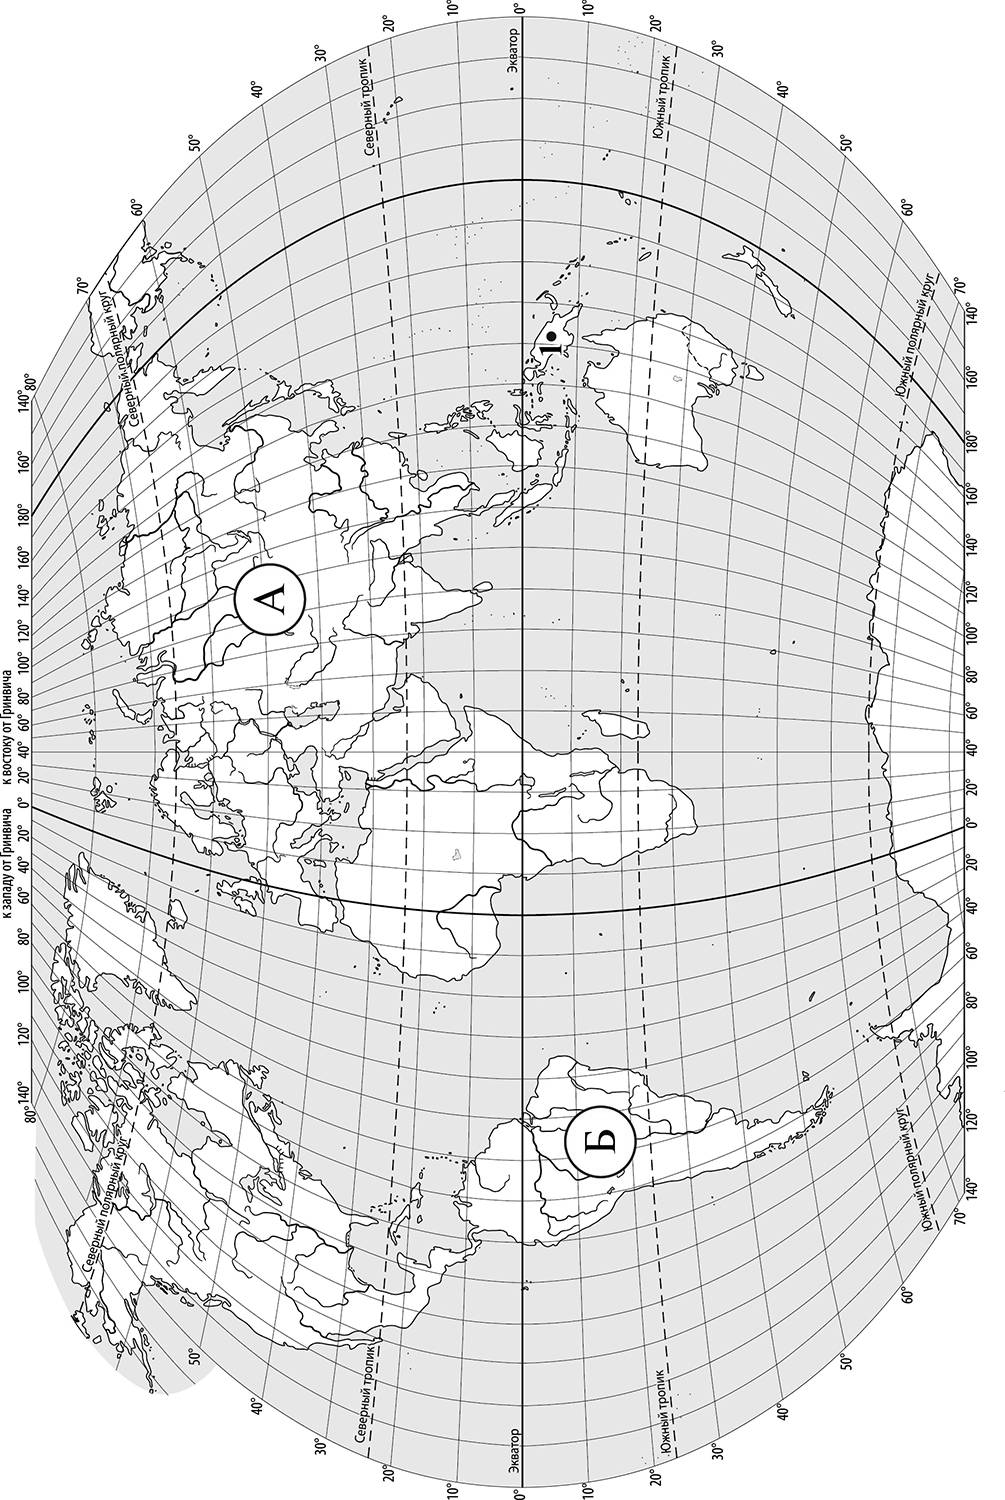 ВПР 2021 география. Задания ВПР по географии 6 класс. Карта материков из ВПР по географии.